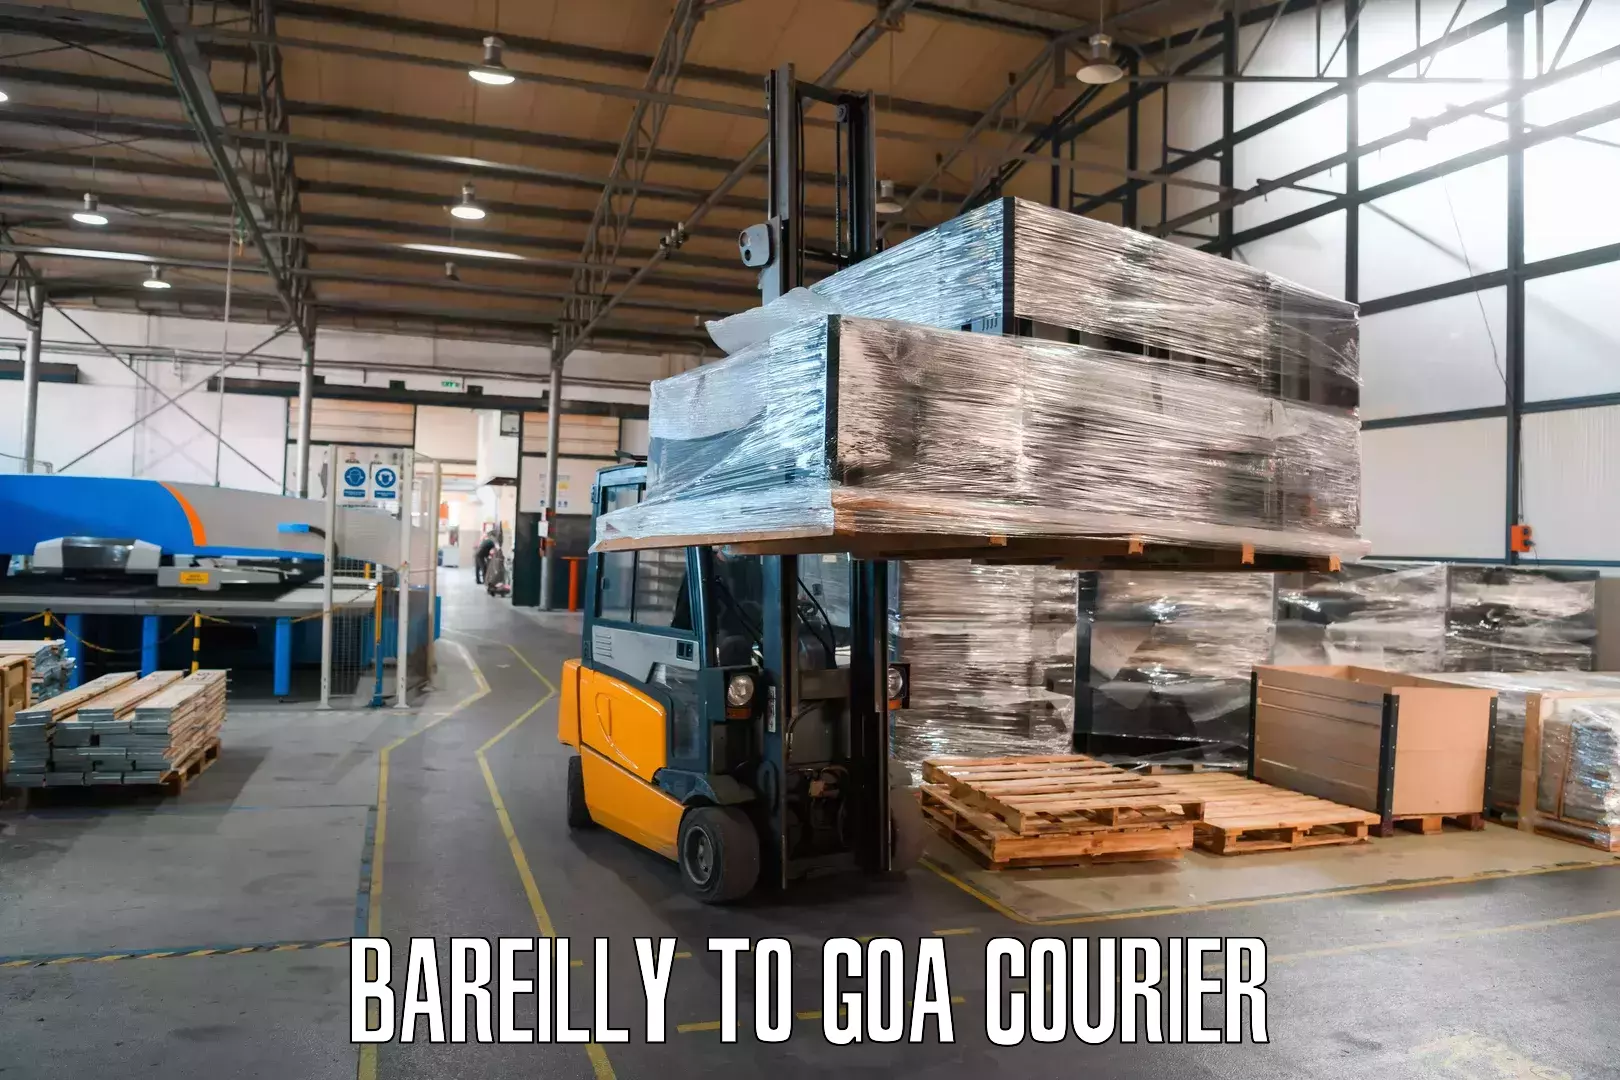 Door-to-door freight service Bareilly to Goa